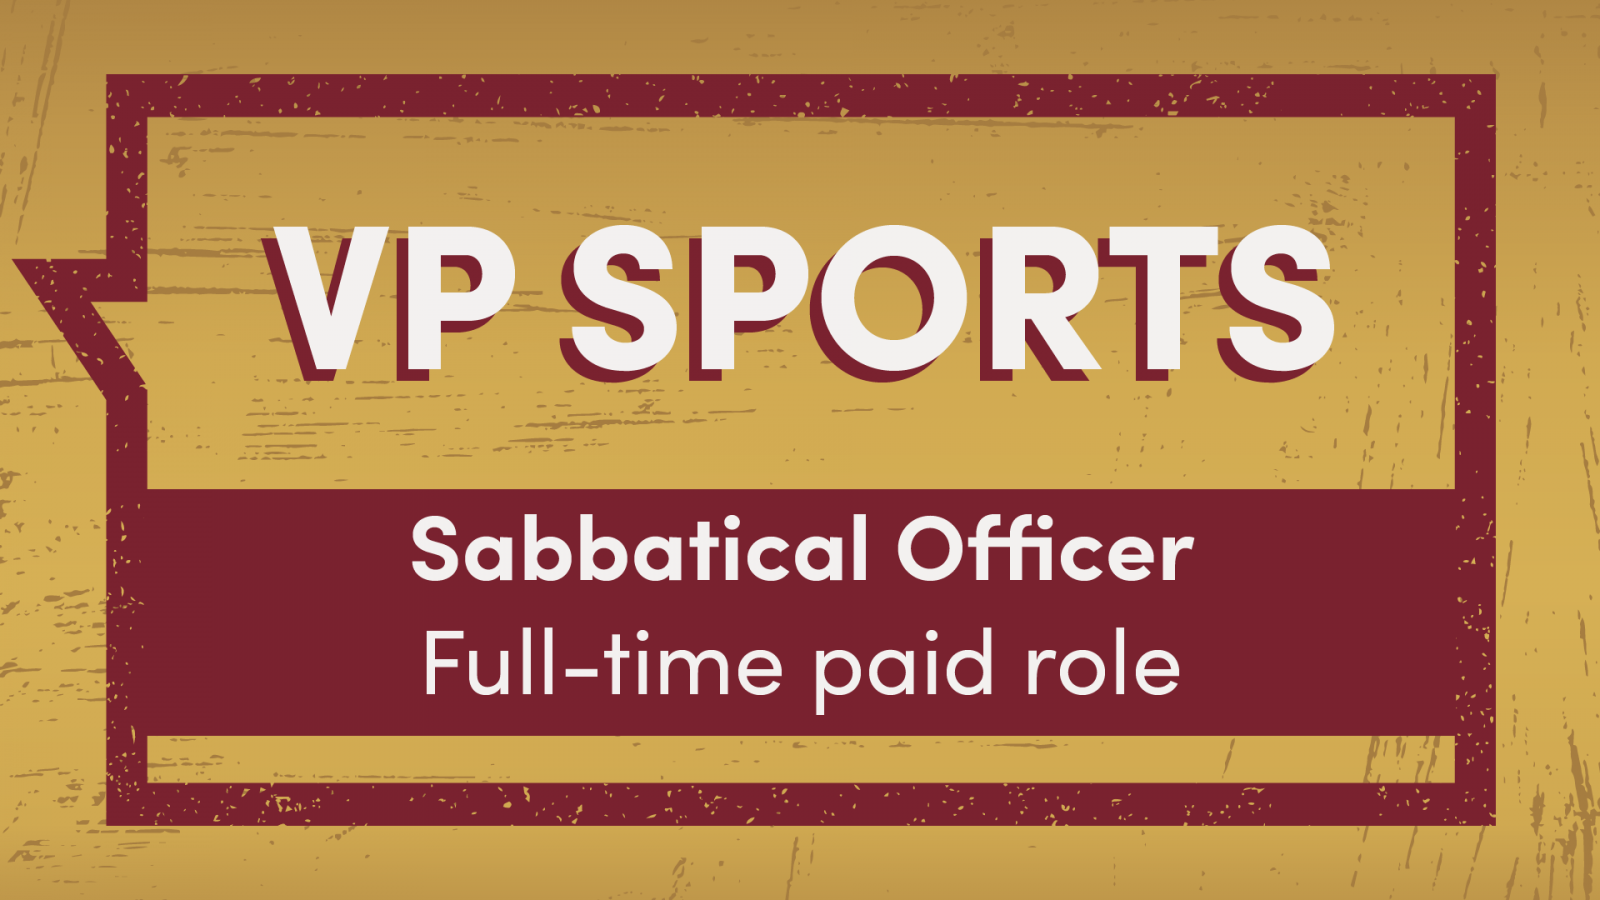 Open the VP Sports role profile PDF